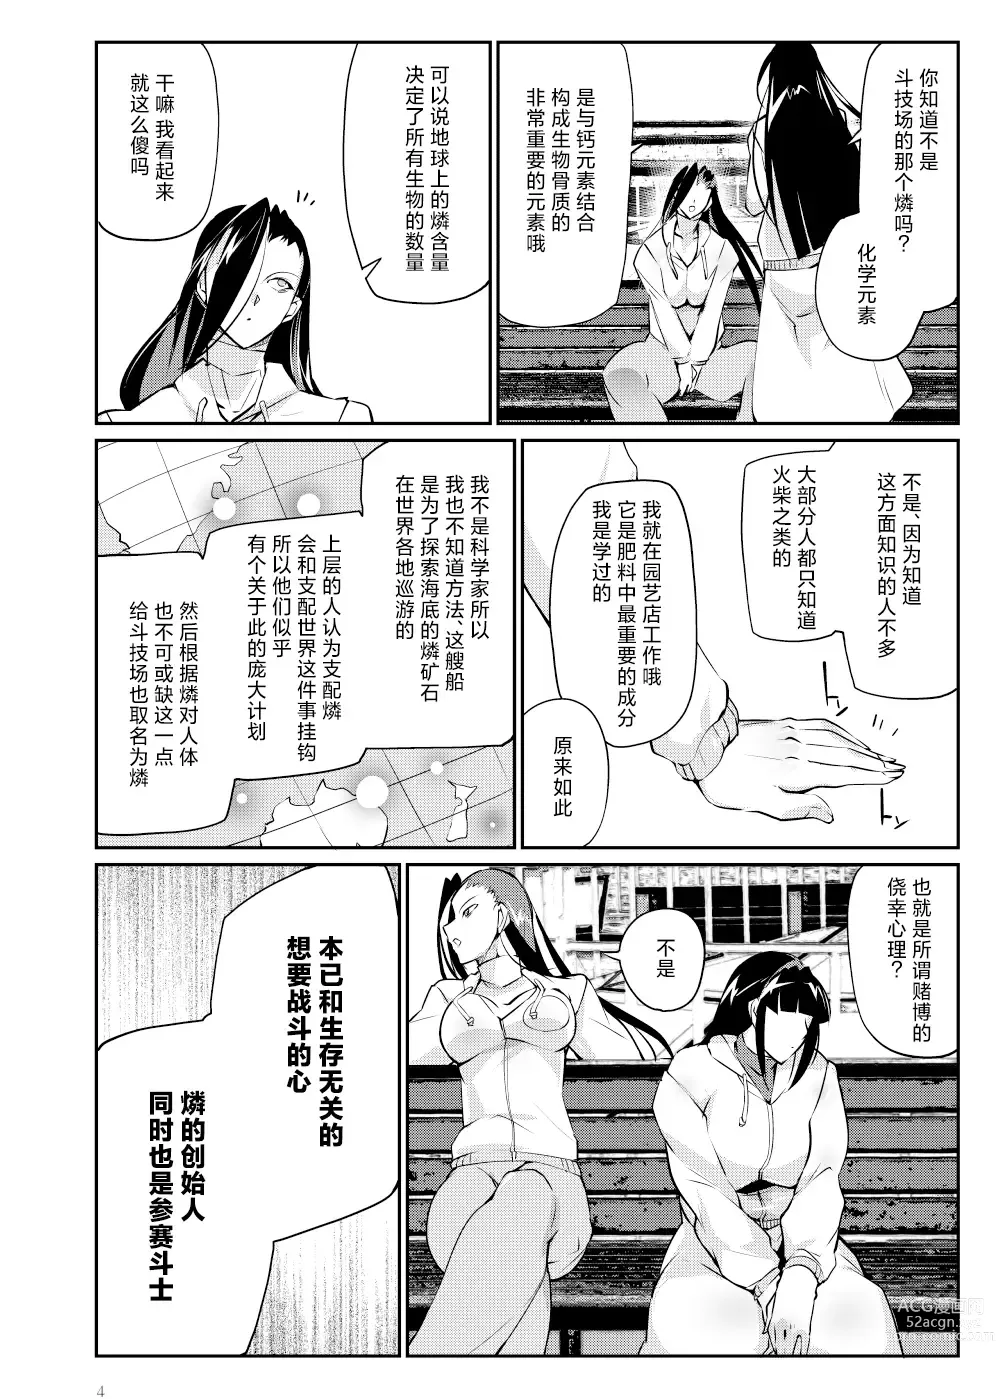 Page 3 of doujinshi Tougijou Rin - Arena Rin 6